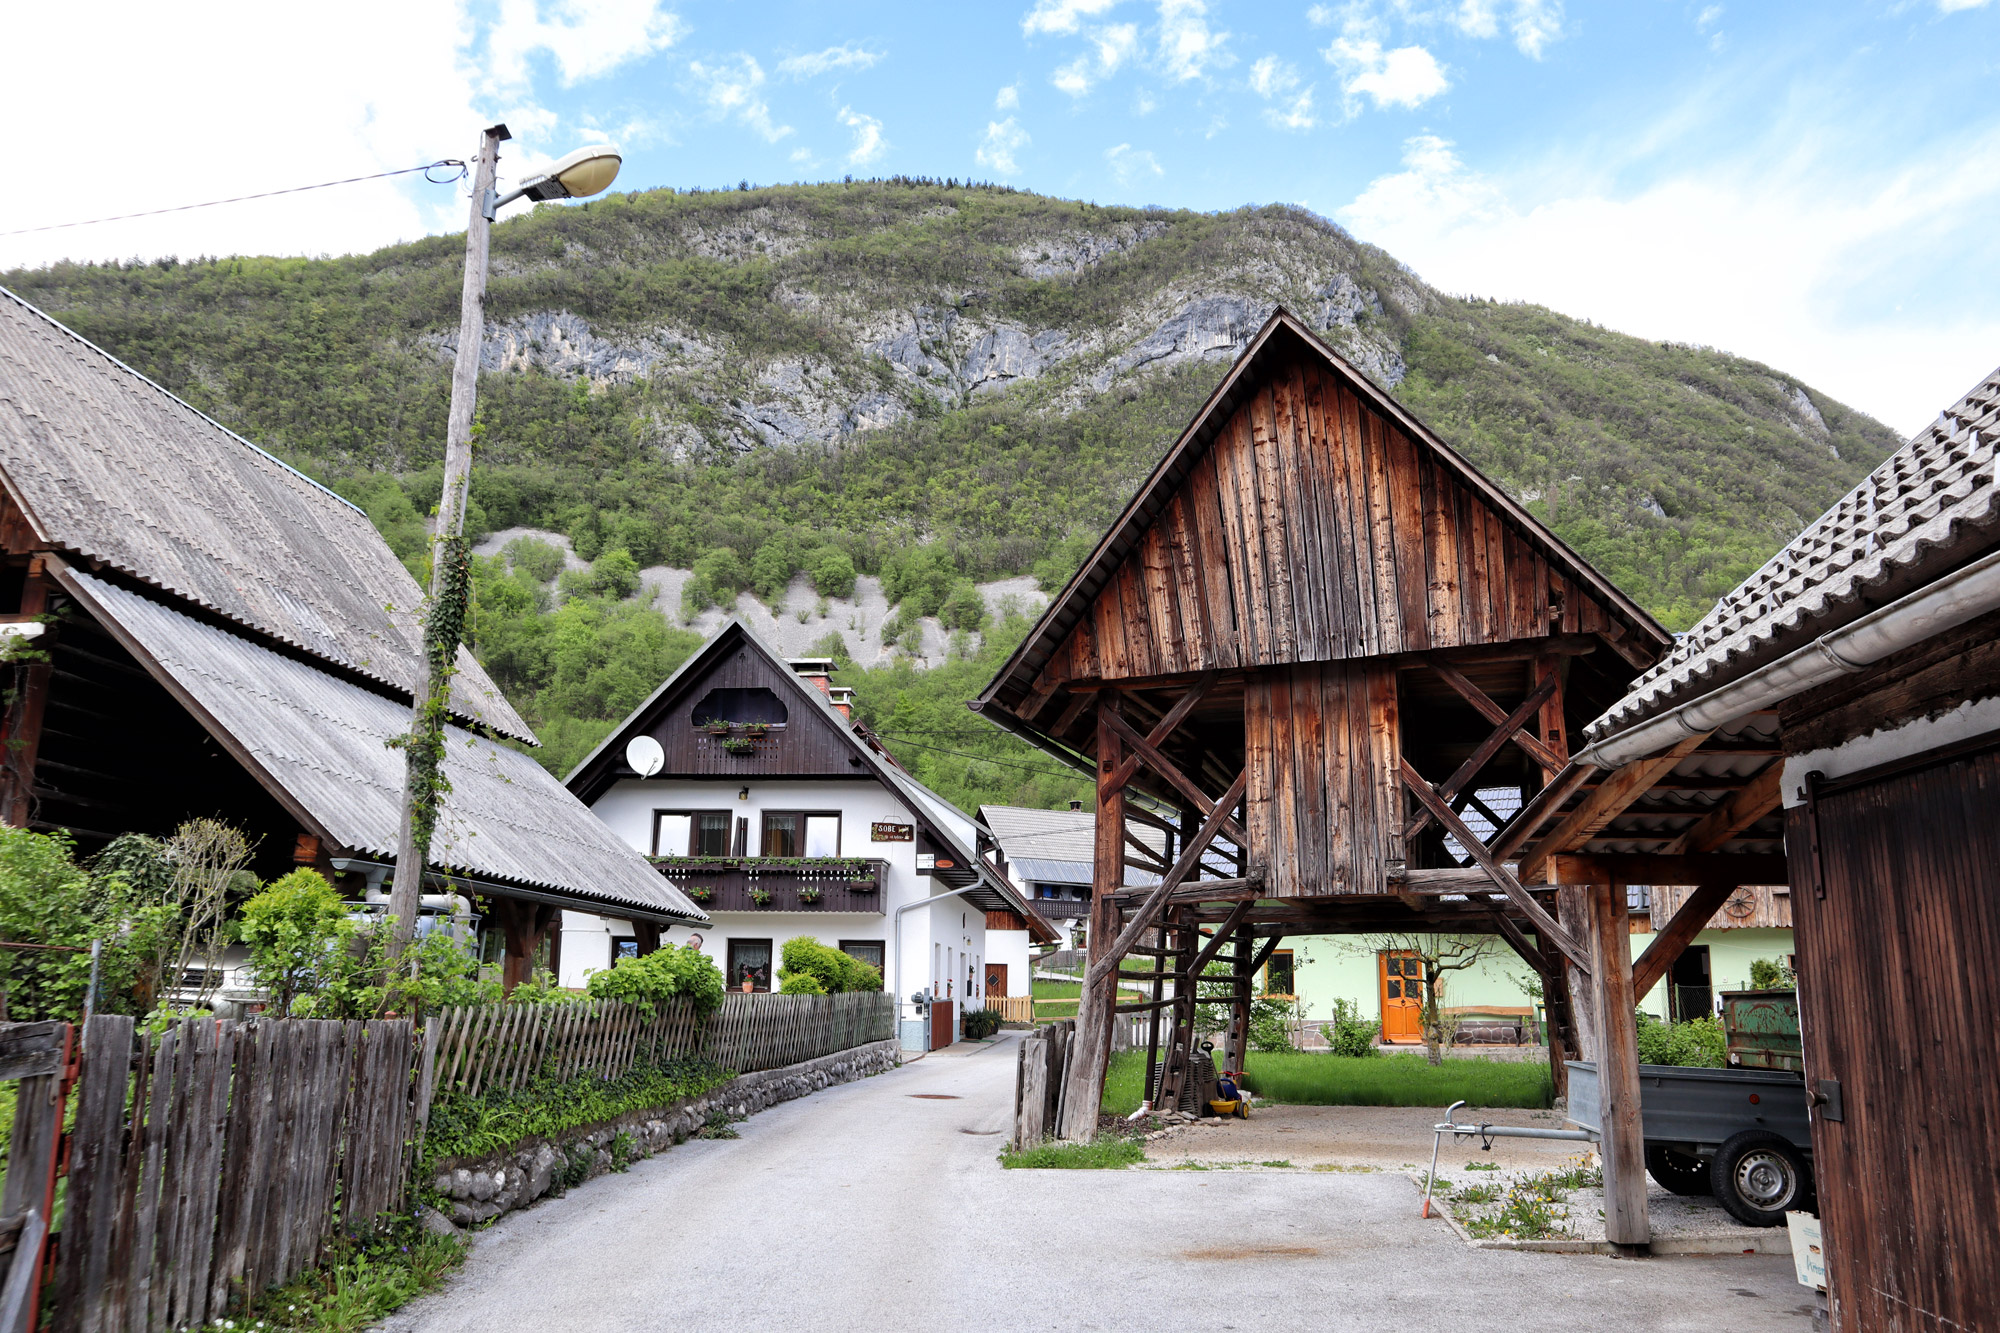 Wandelen in Bohinj, Slovenië